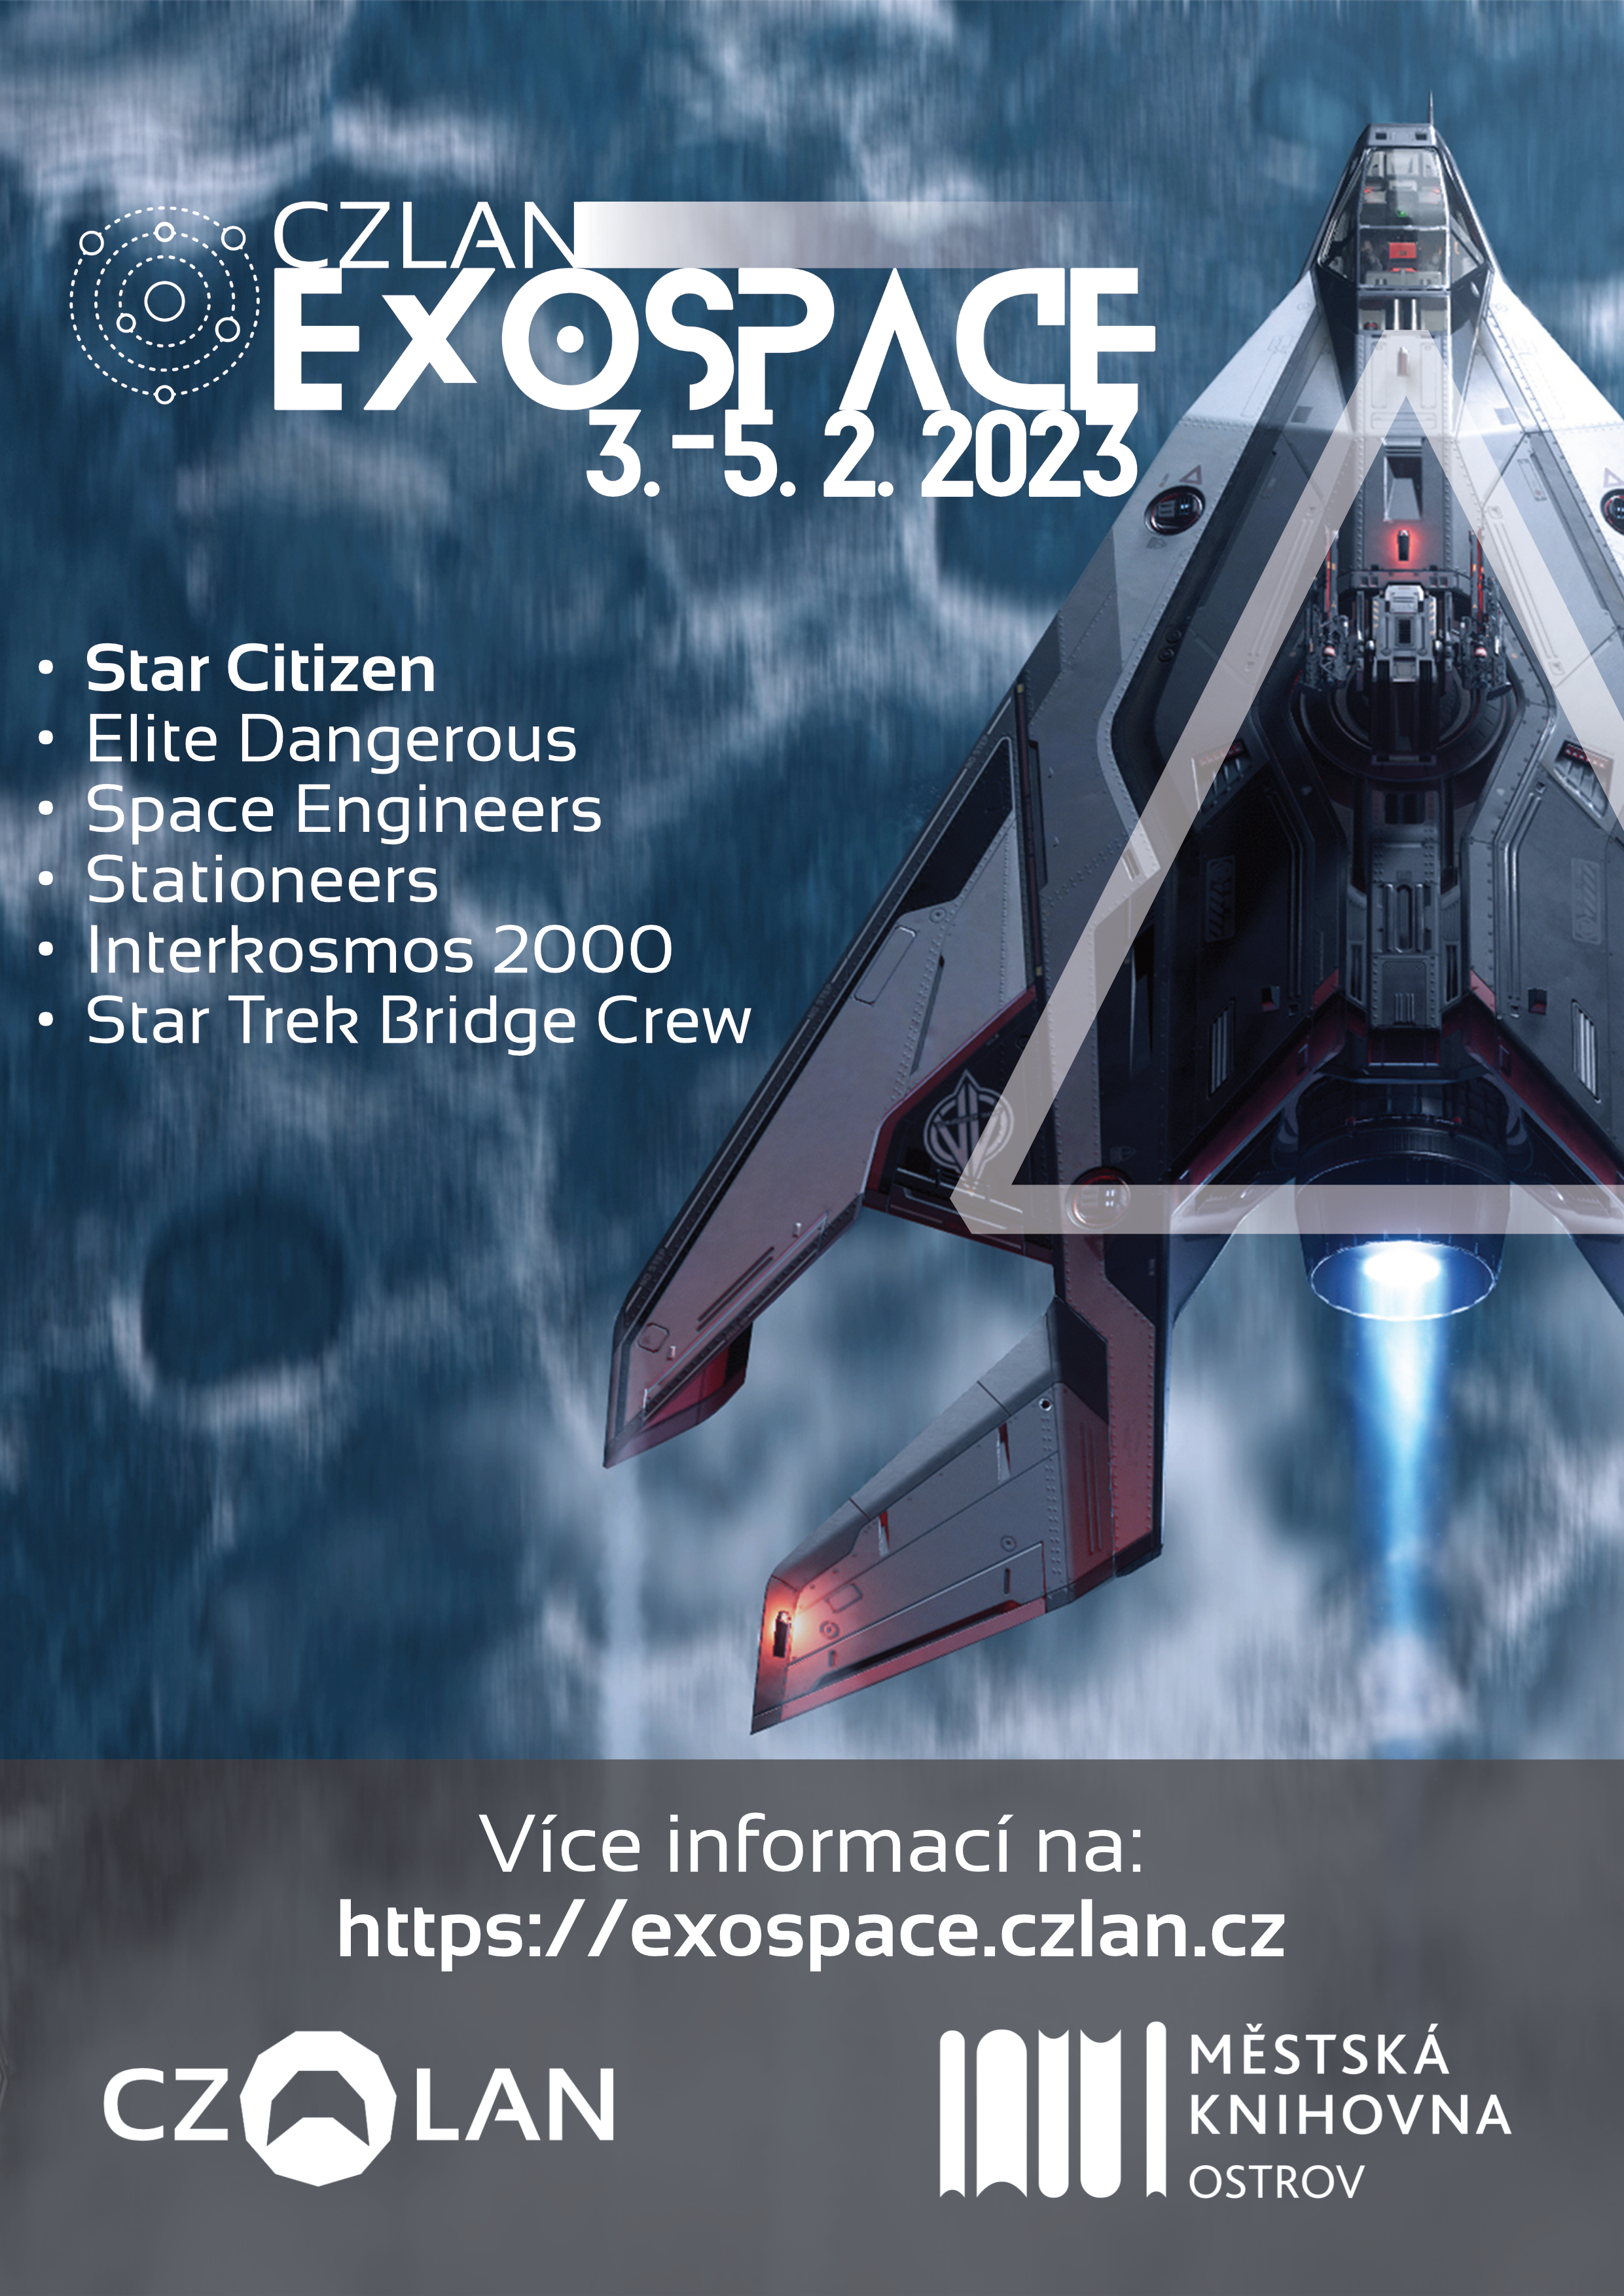 CZLAN Exospace 2023